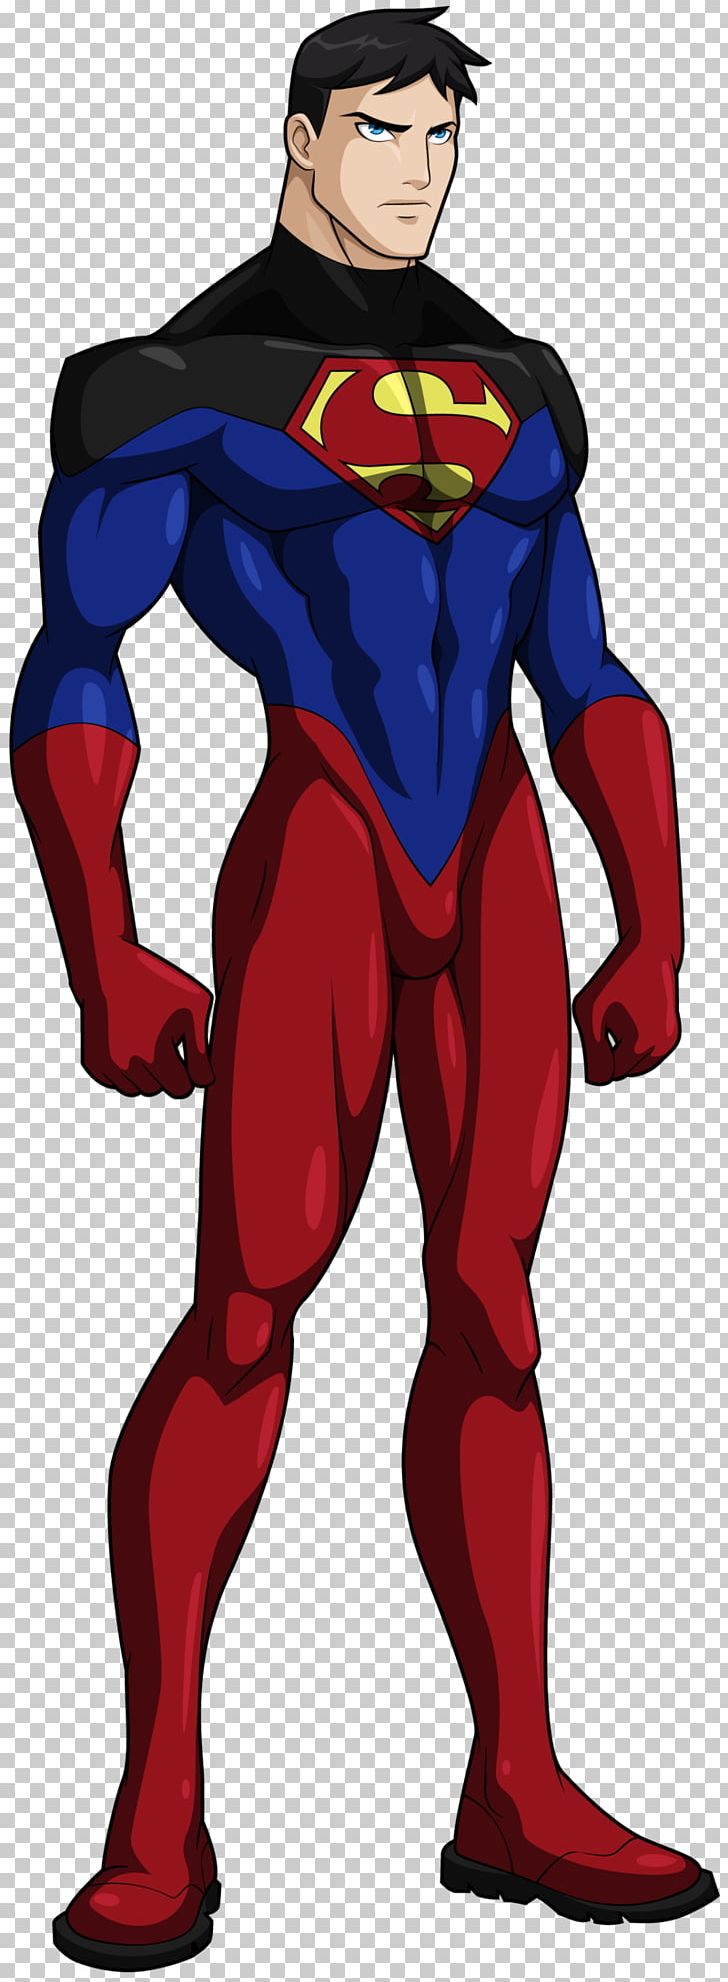 Superboy Superman Young Justice Comic Book Superhero PNG, Clipart, Art, Comic Book, Comics, Costume Design, Deviantart Free PNG Download